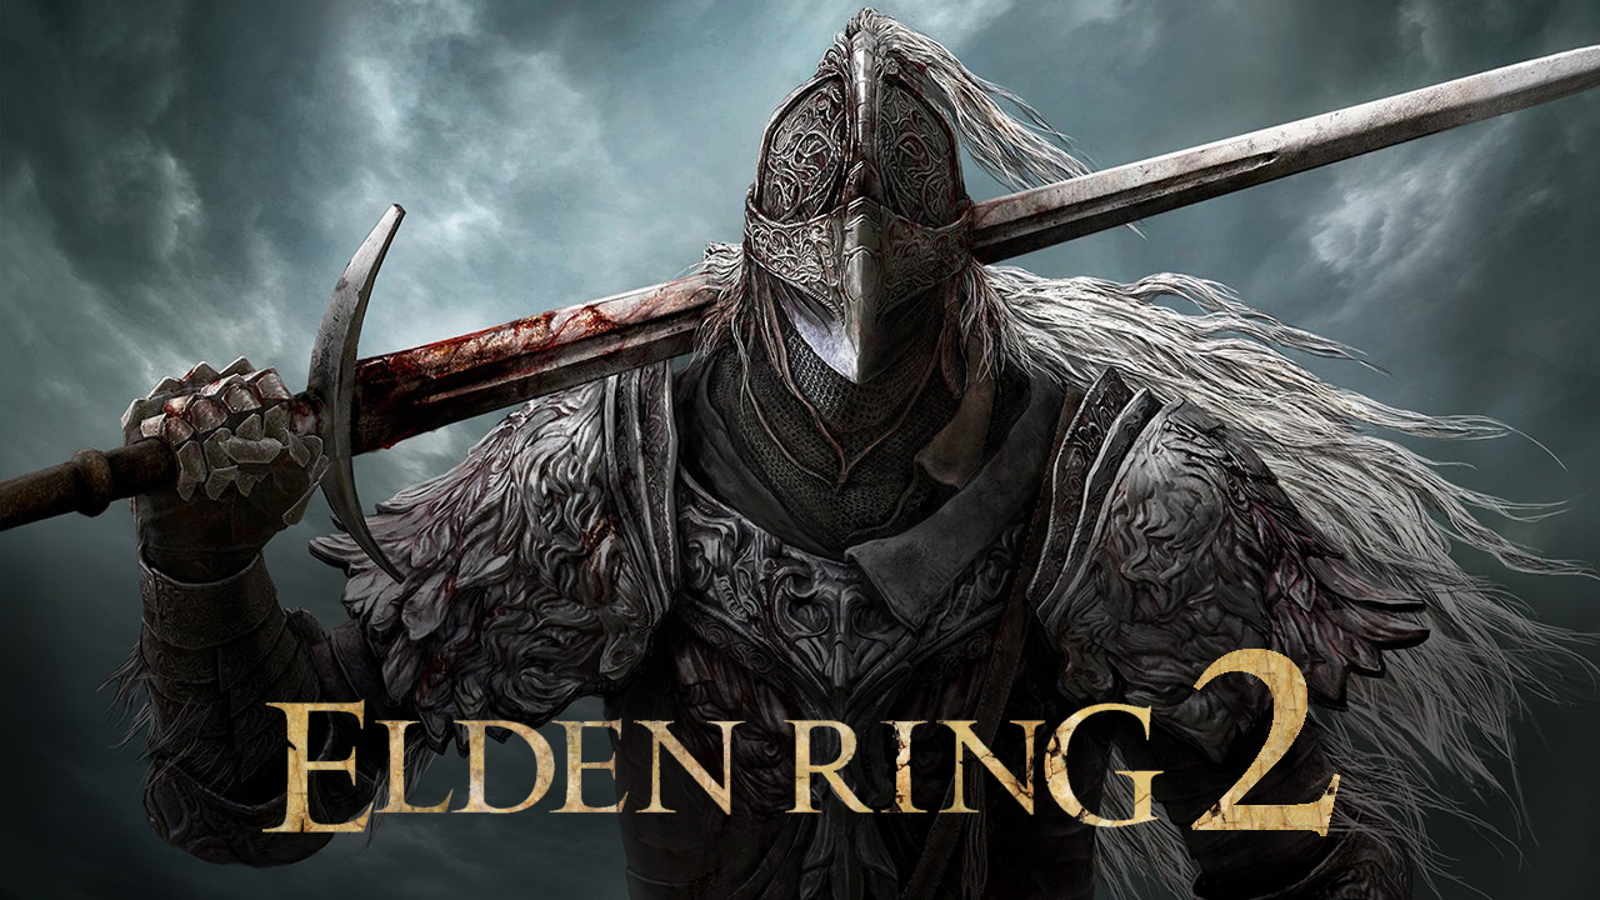 Elden Ring jogo do ano, Hades II , Death Stranding 2 e muitos outros. Veja  o que rolou em um dos melhores TGA's desde muito tempo : r/gamesEcultura